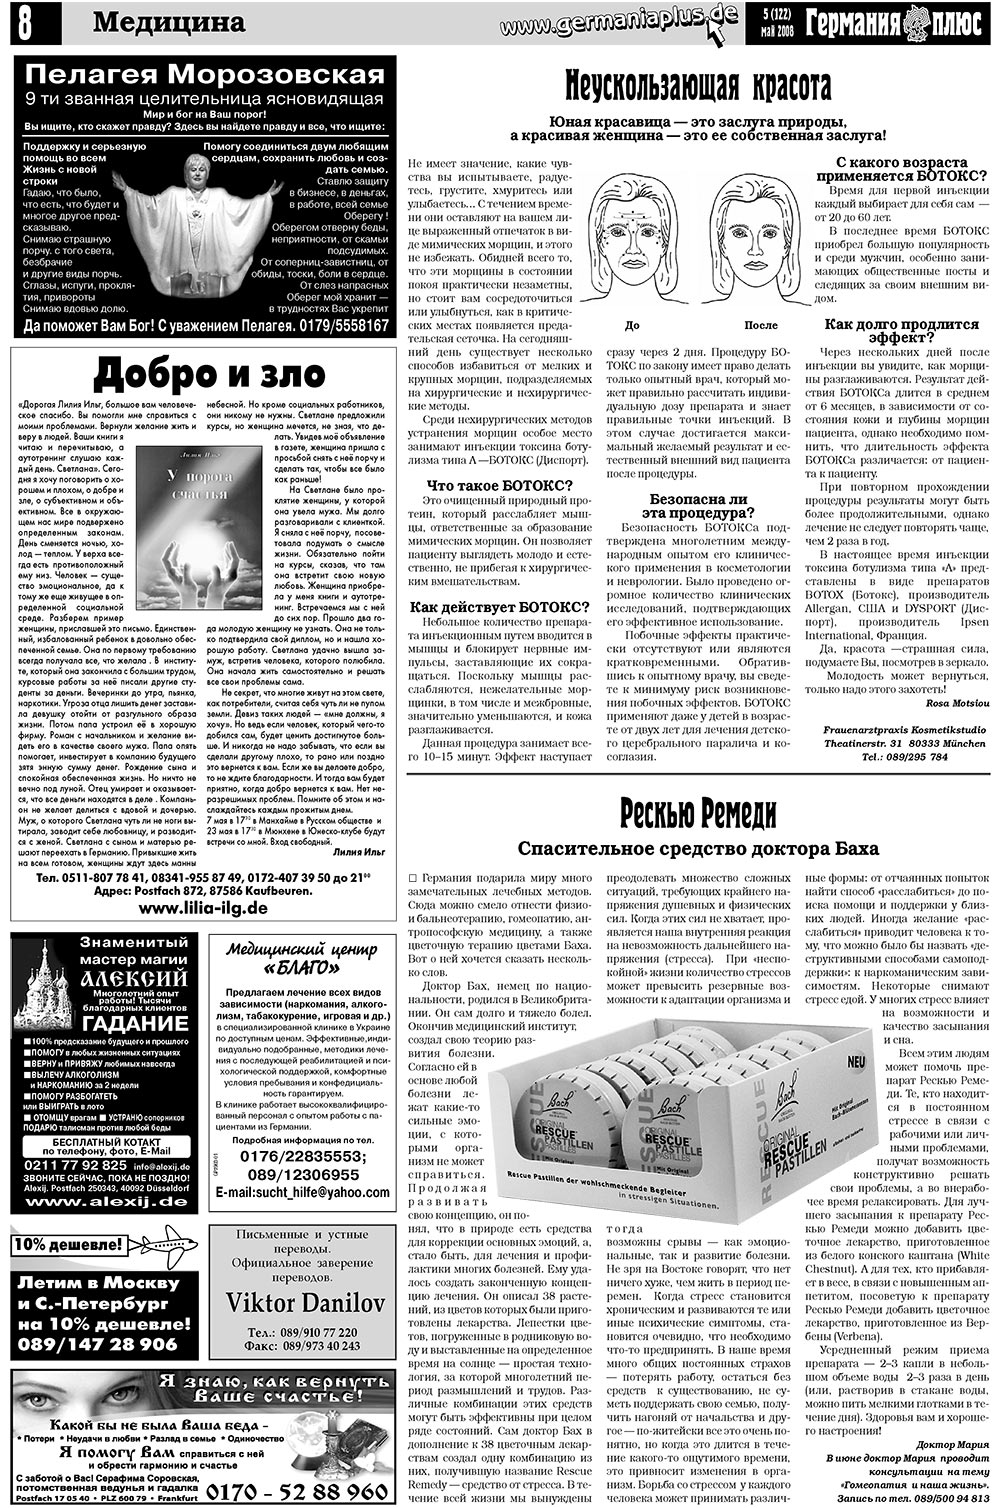 Германия плюс (газета). 2008 год, номер 5, стр. 12